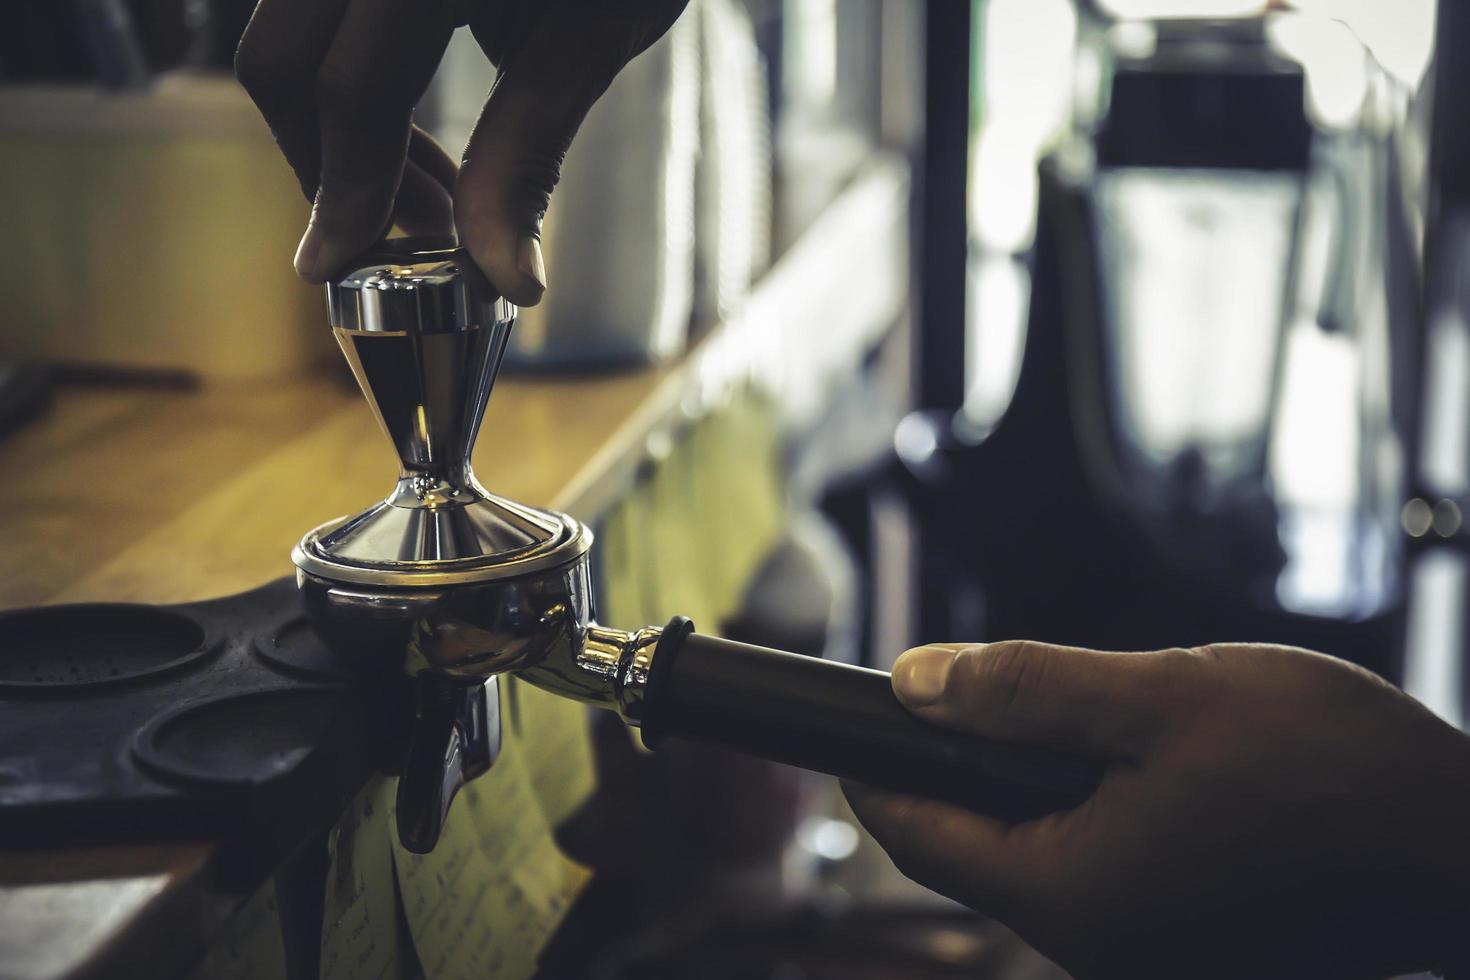 le barista utilise sa main pour presser la poudre de café dans le bloc au cas où le café fraîchement torréfié serait extrait de la machine à diffuser. photo